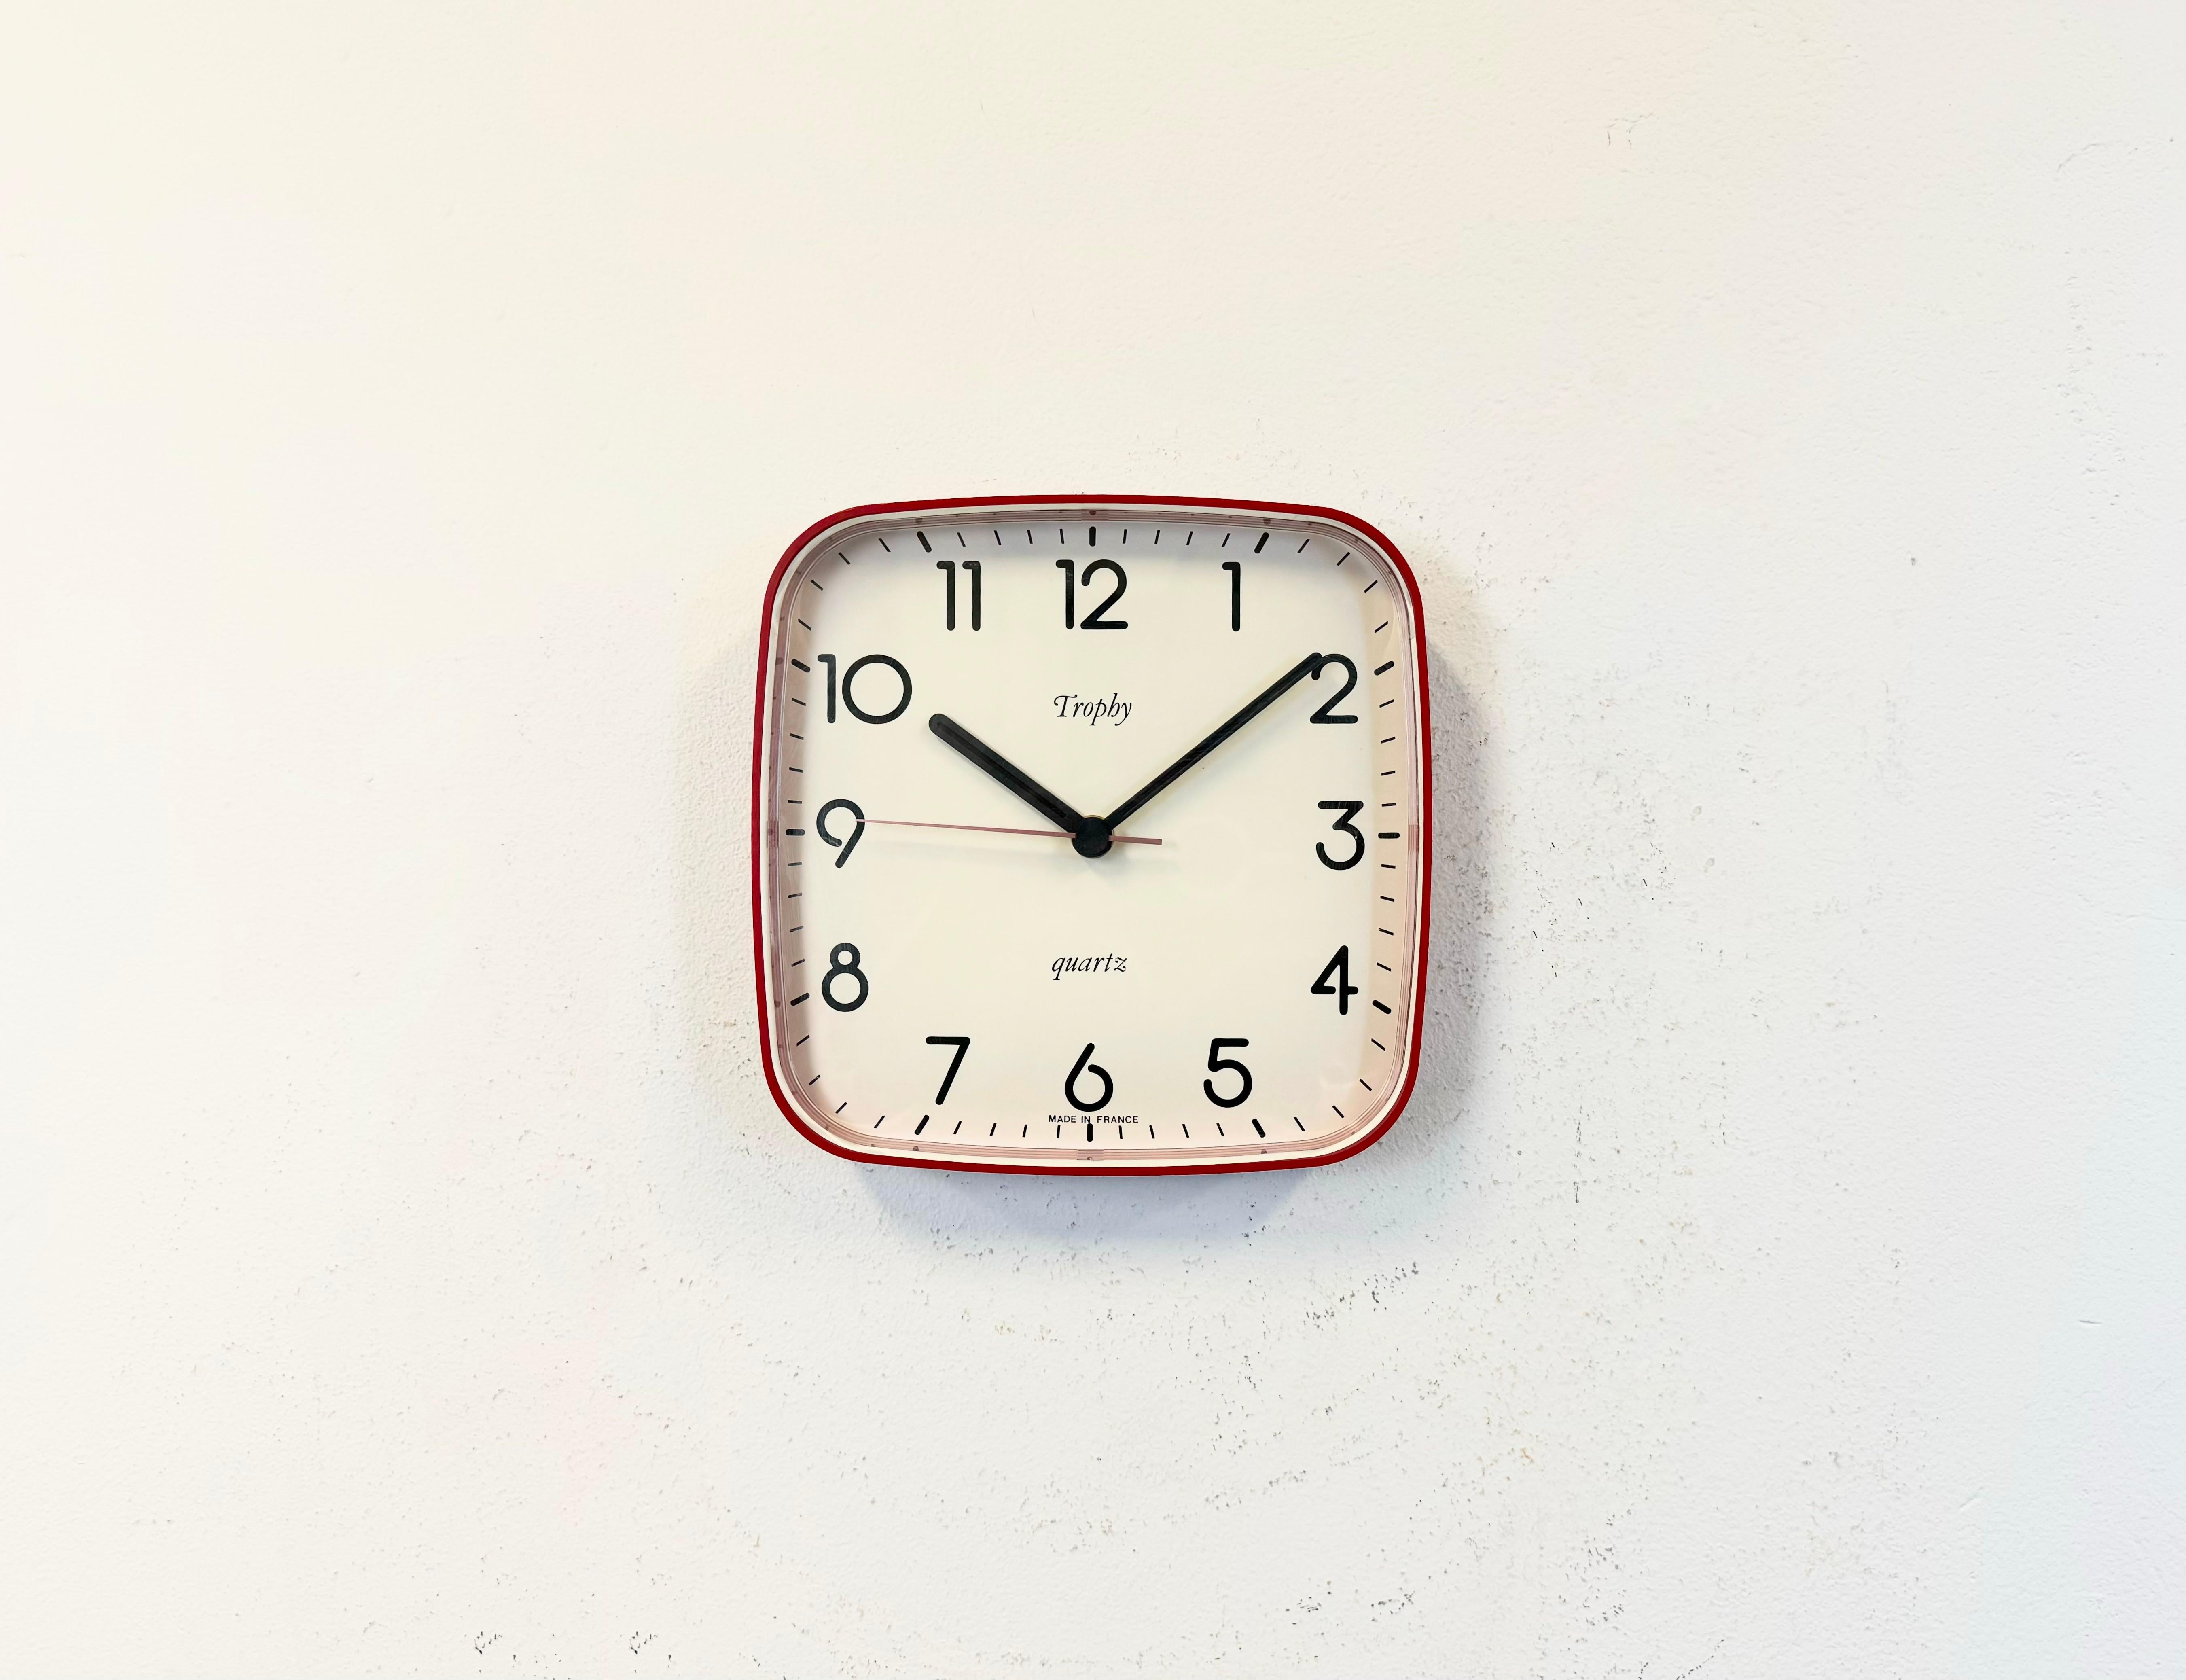 Die Vintage-Wanduhr aus Bakelit wurde in den 1990er Jahren von Trophy in Frankreich hergestellt. Das Gehäuse ist aus rotem Bakelit und der Deckel aus Klarglas. Das Original-Uhrwerk funktioniert einwandfrei und benötigt eine AA-Batterie.
Das Gewicht